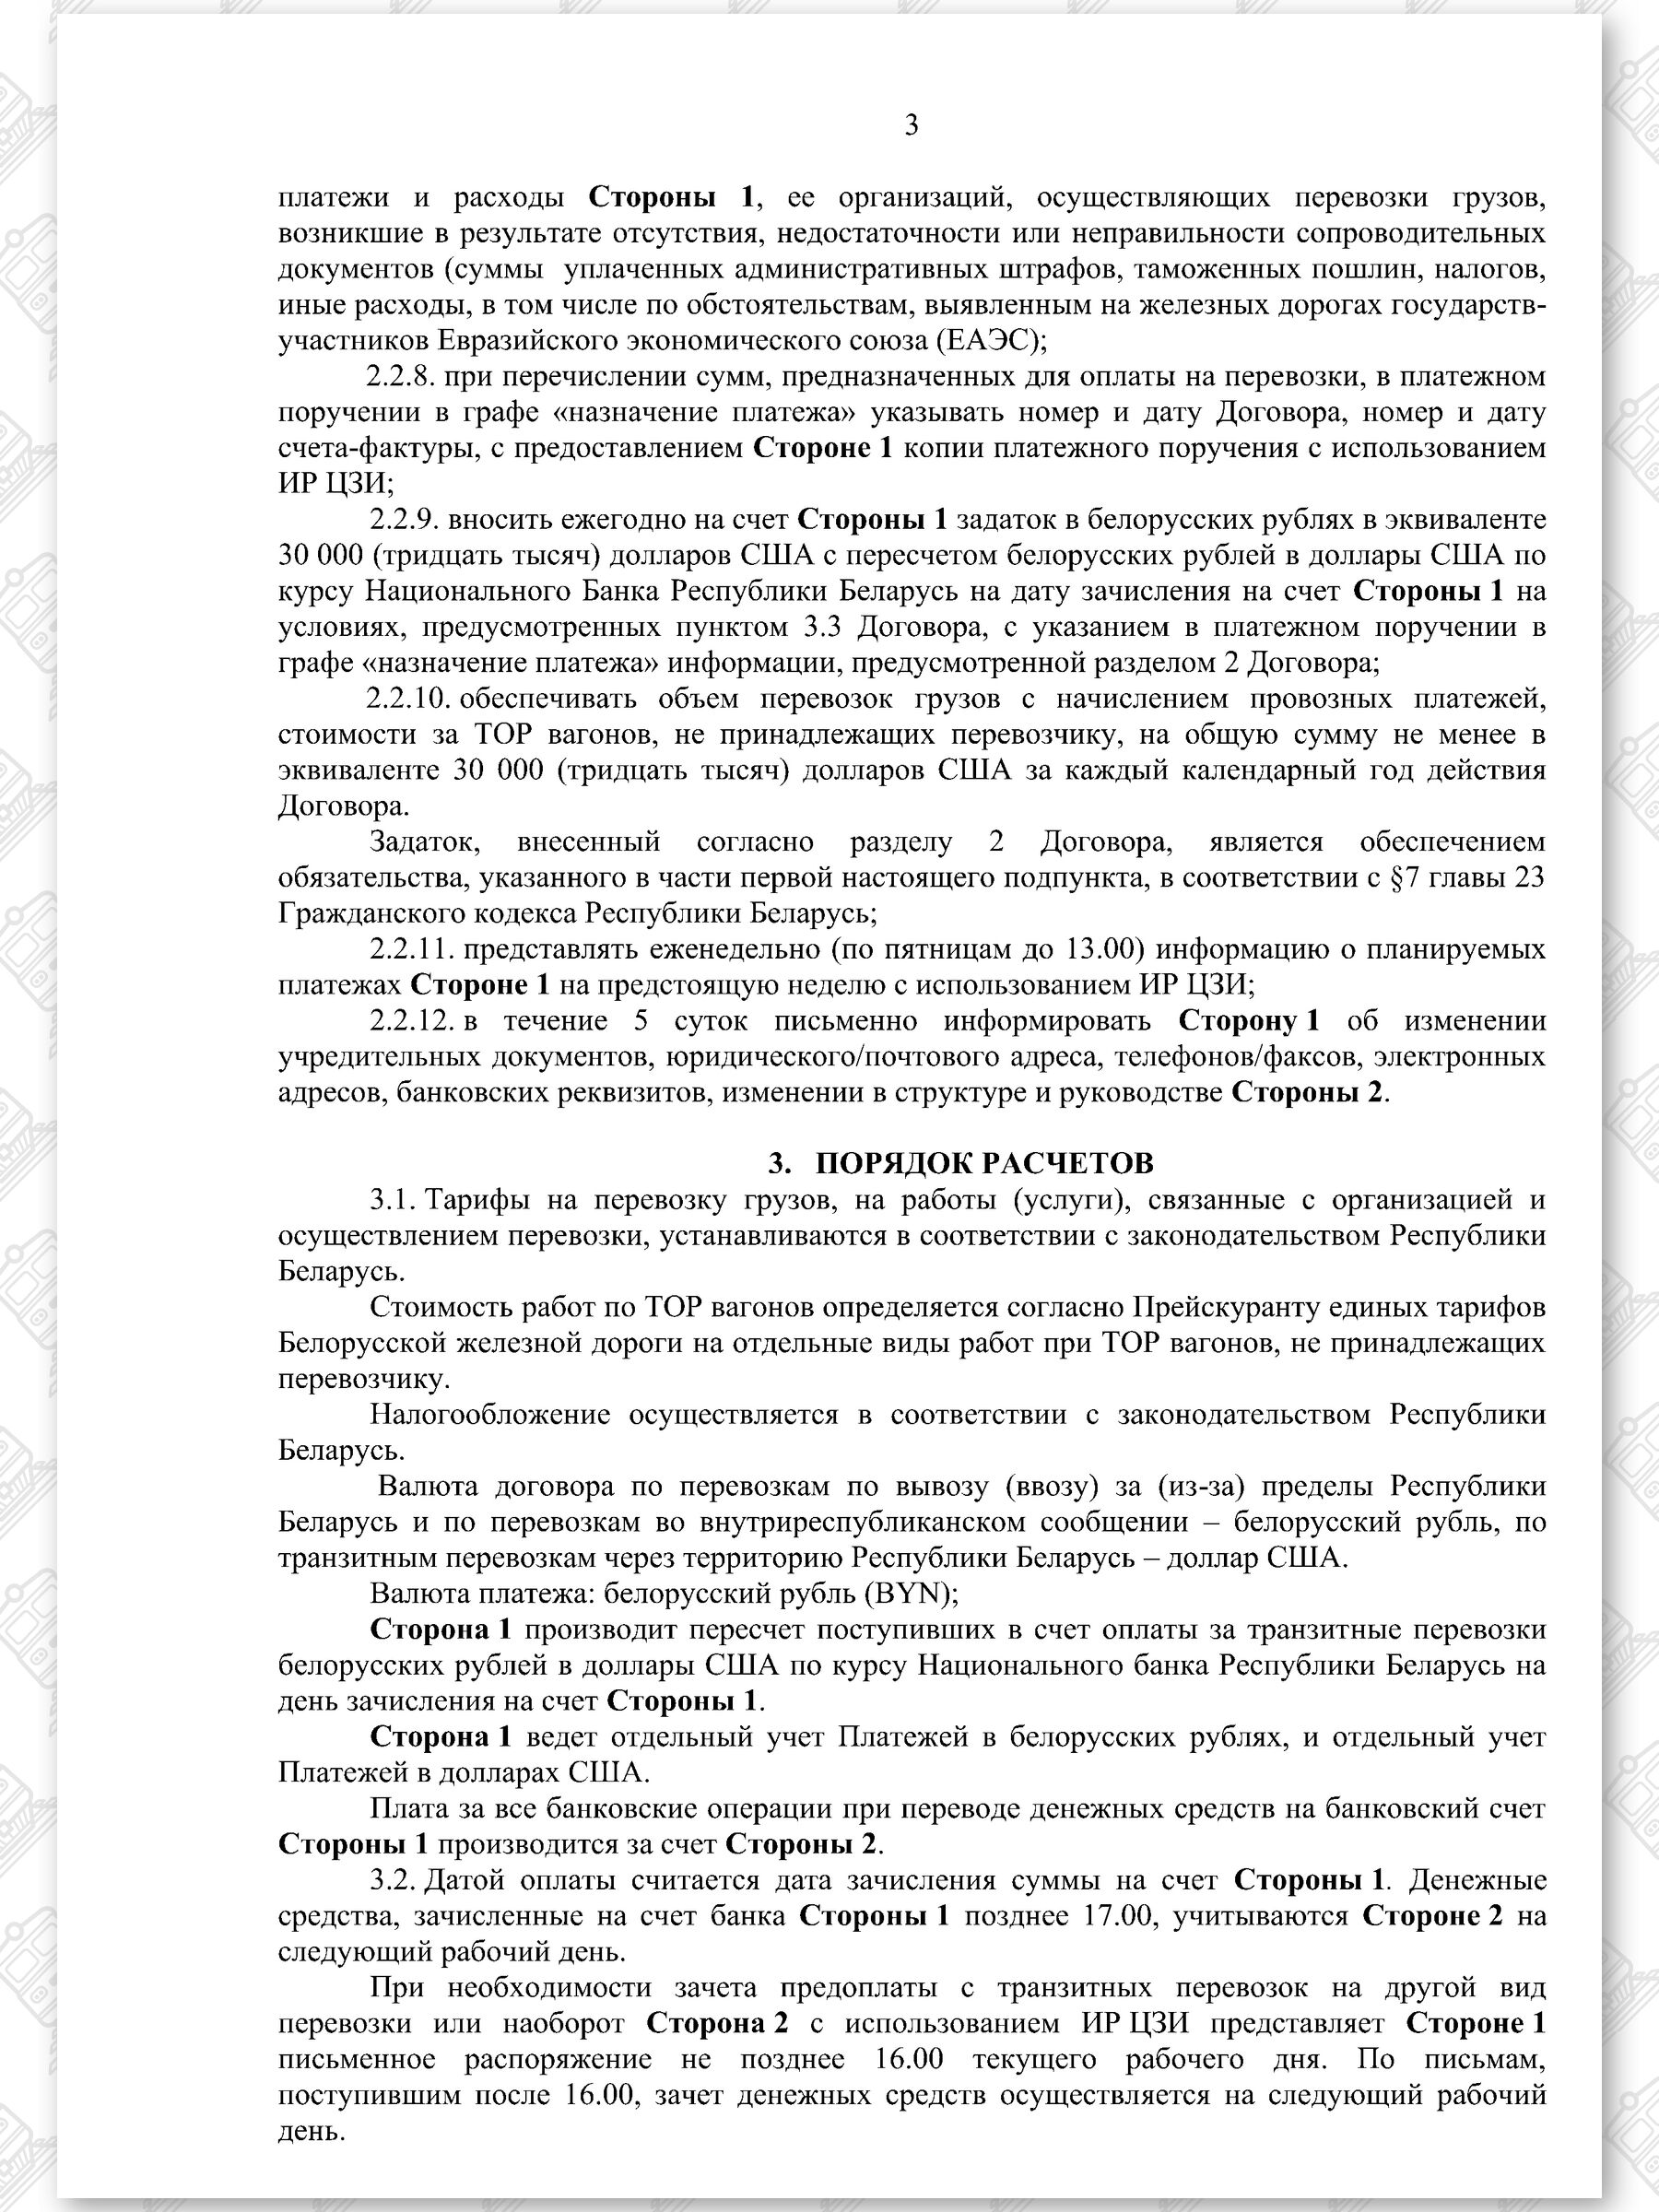 Договор на 2022 - 2024 гг. БЖД с ООО «ТранскоЭнерджи» (Страница 3)